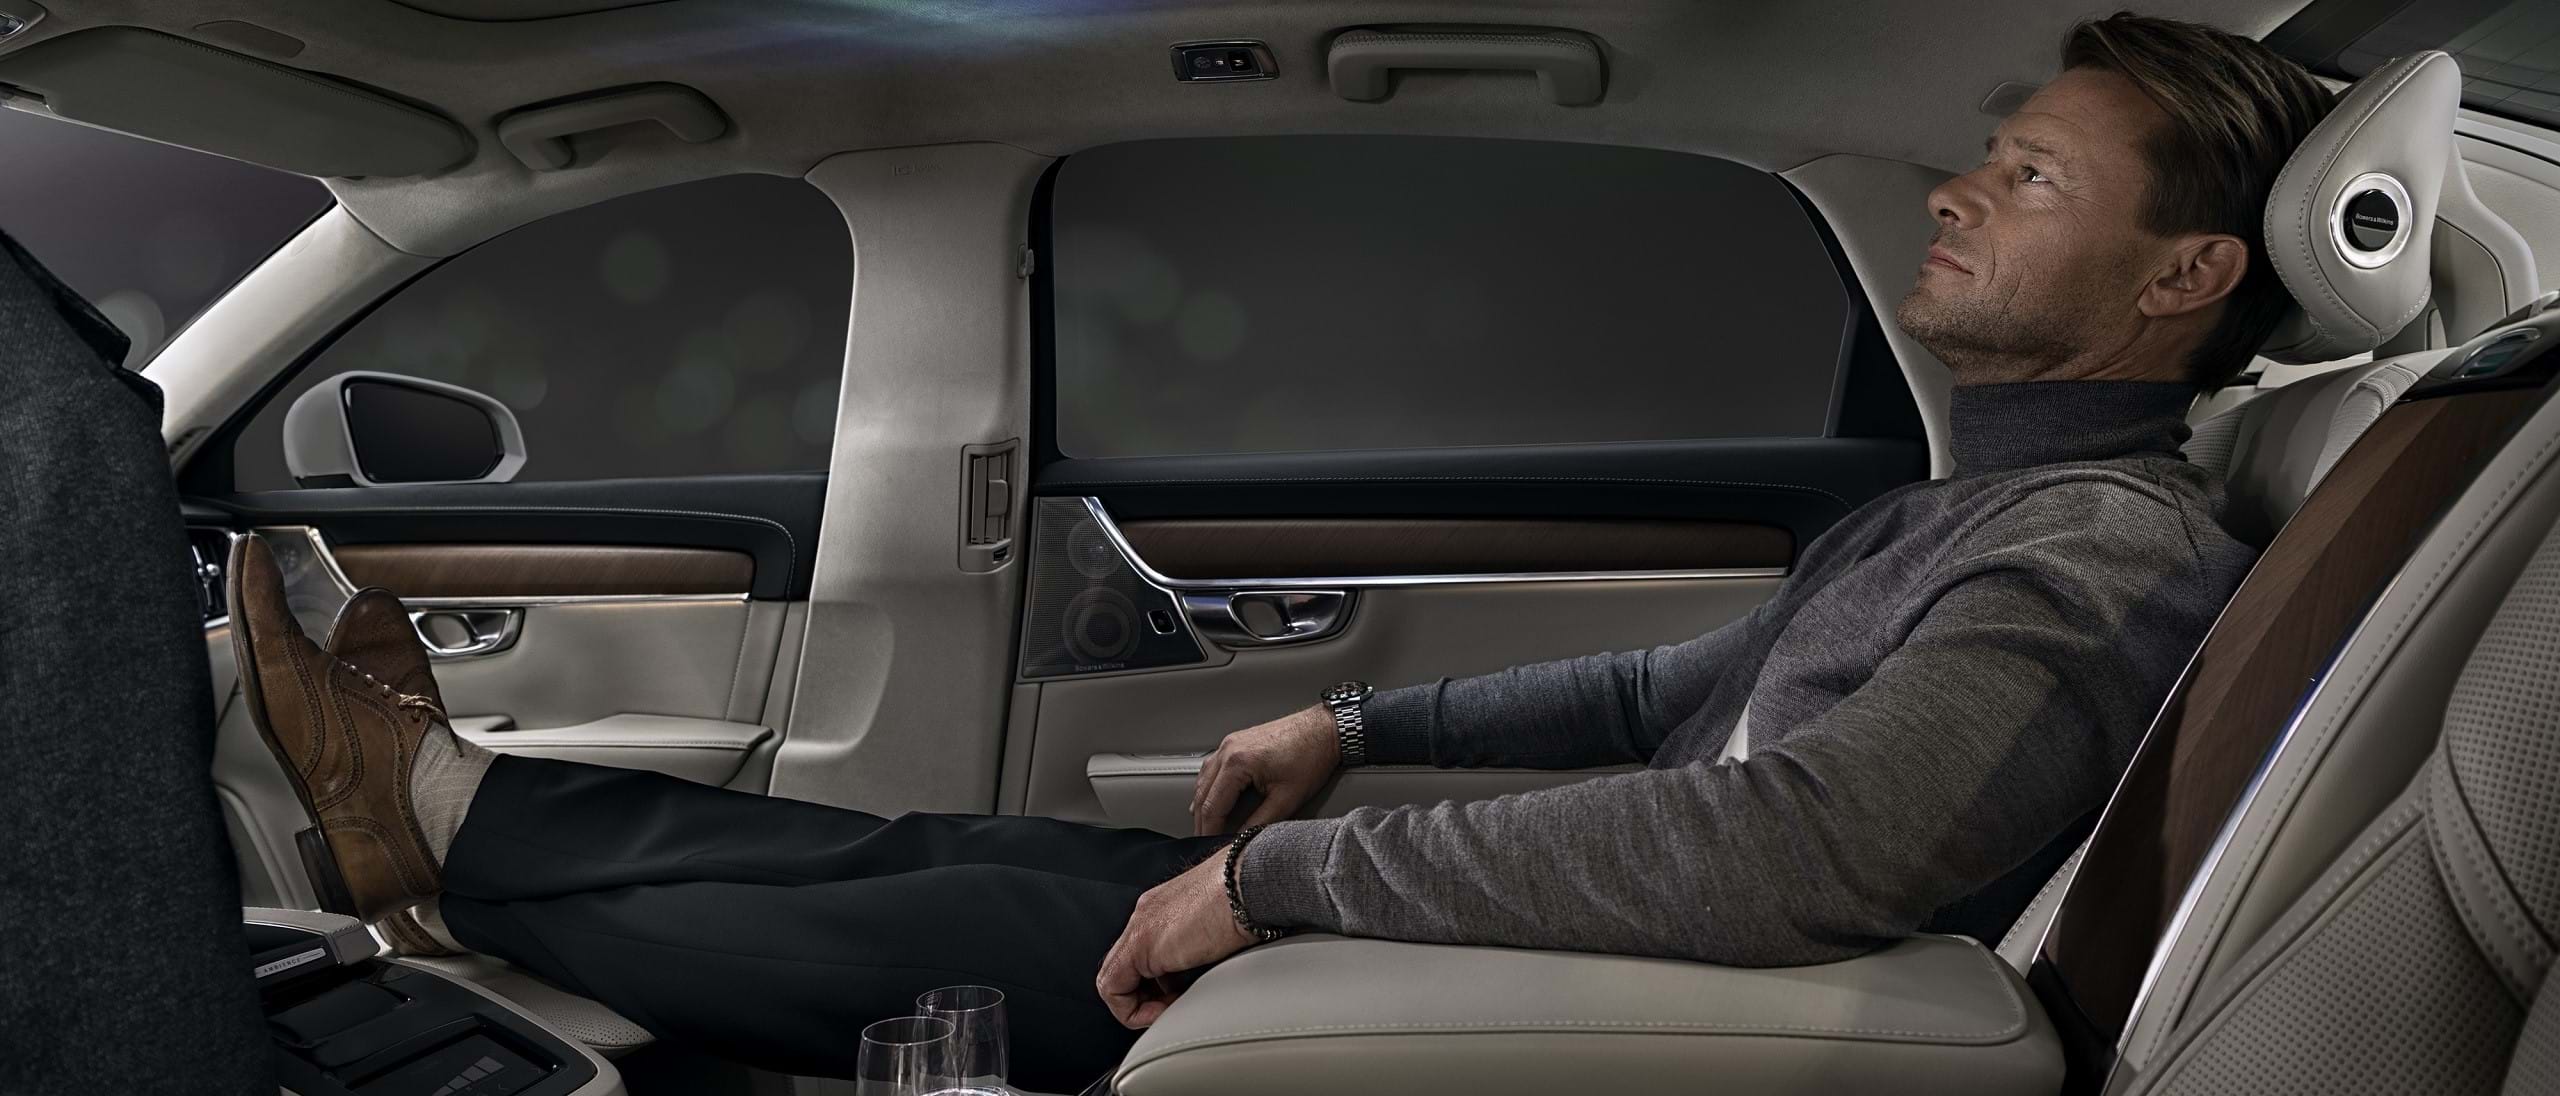 Muž odpočívajúci na zadnom sedadle vozidla Volvo a užívajúci si atmosféru v interiéri.